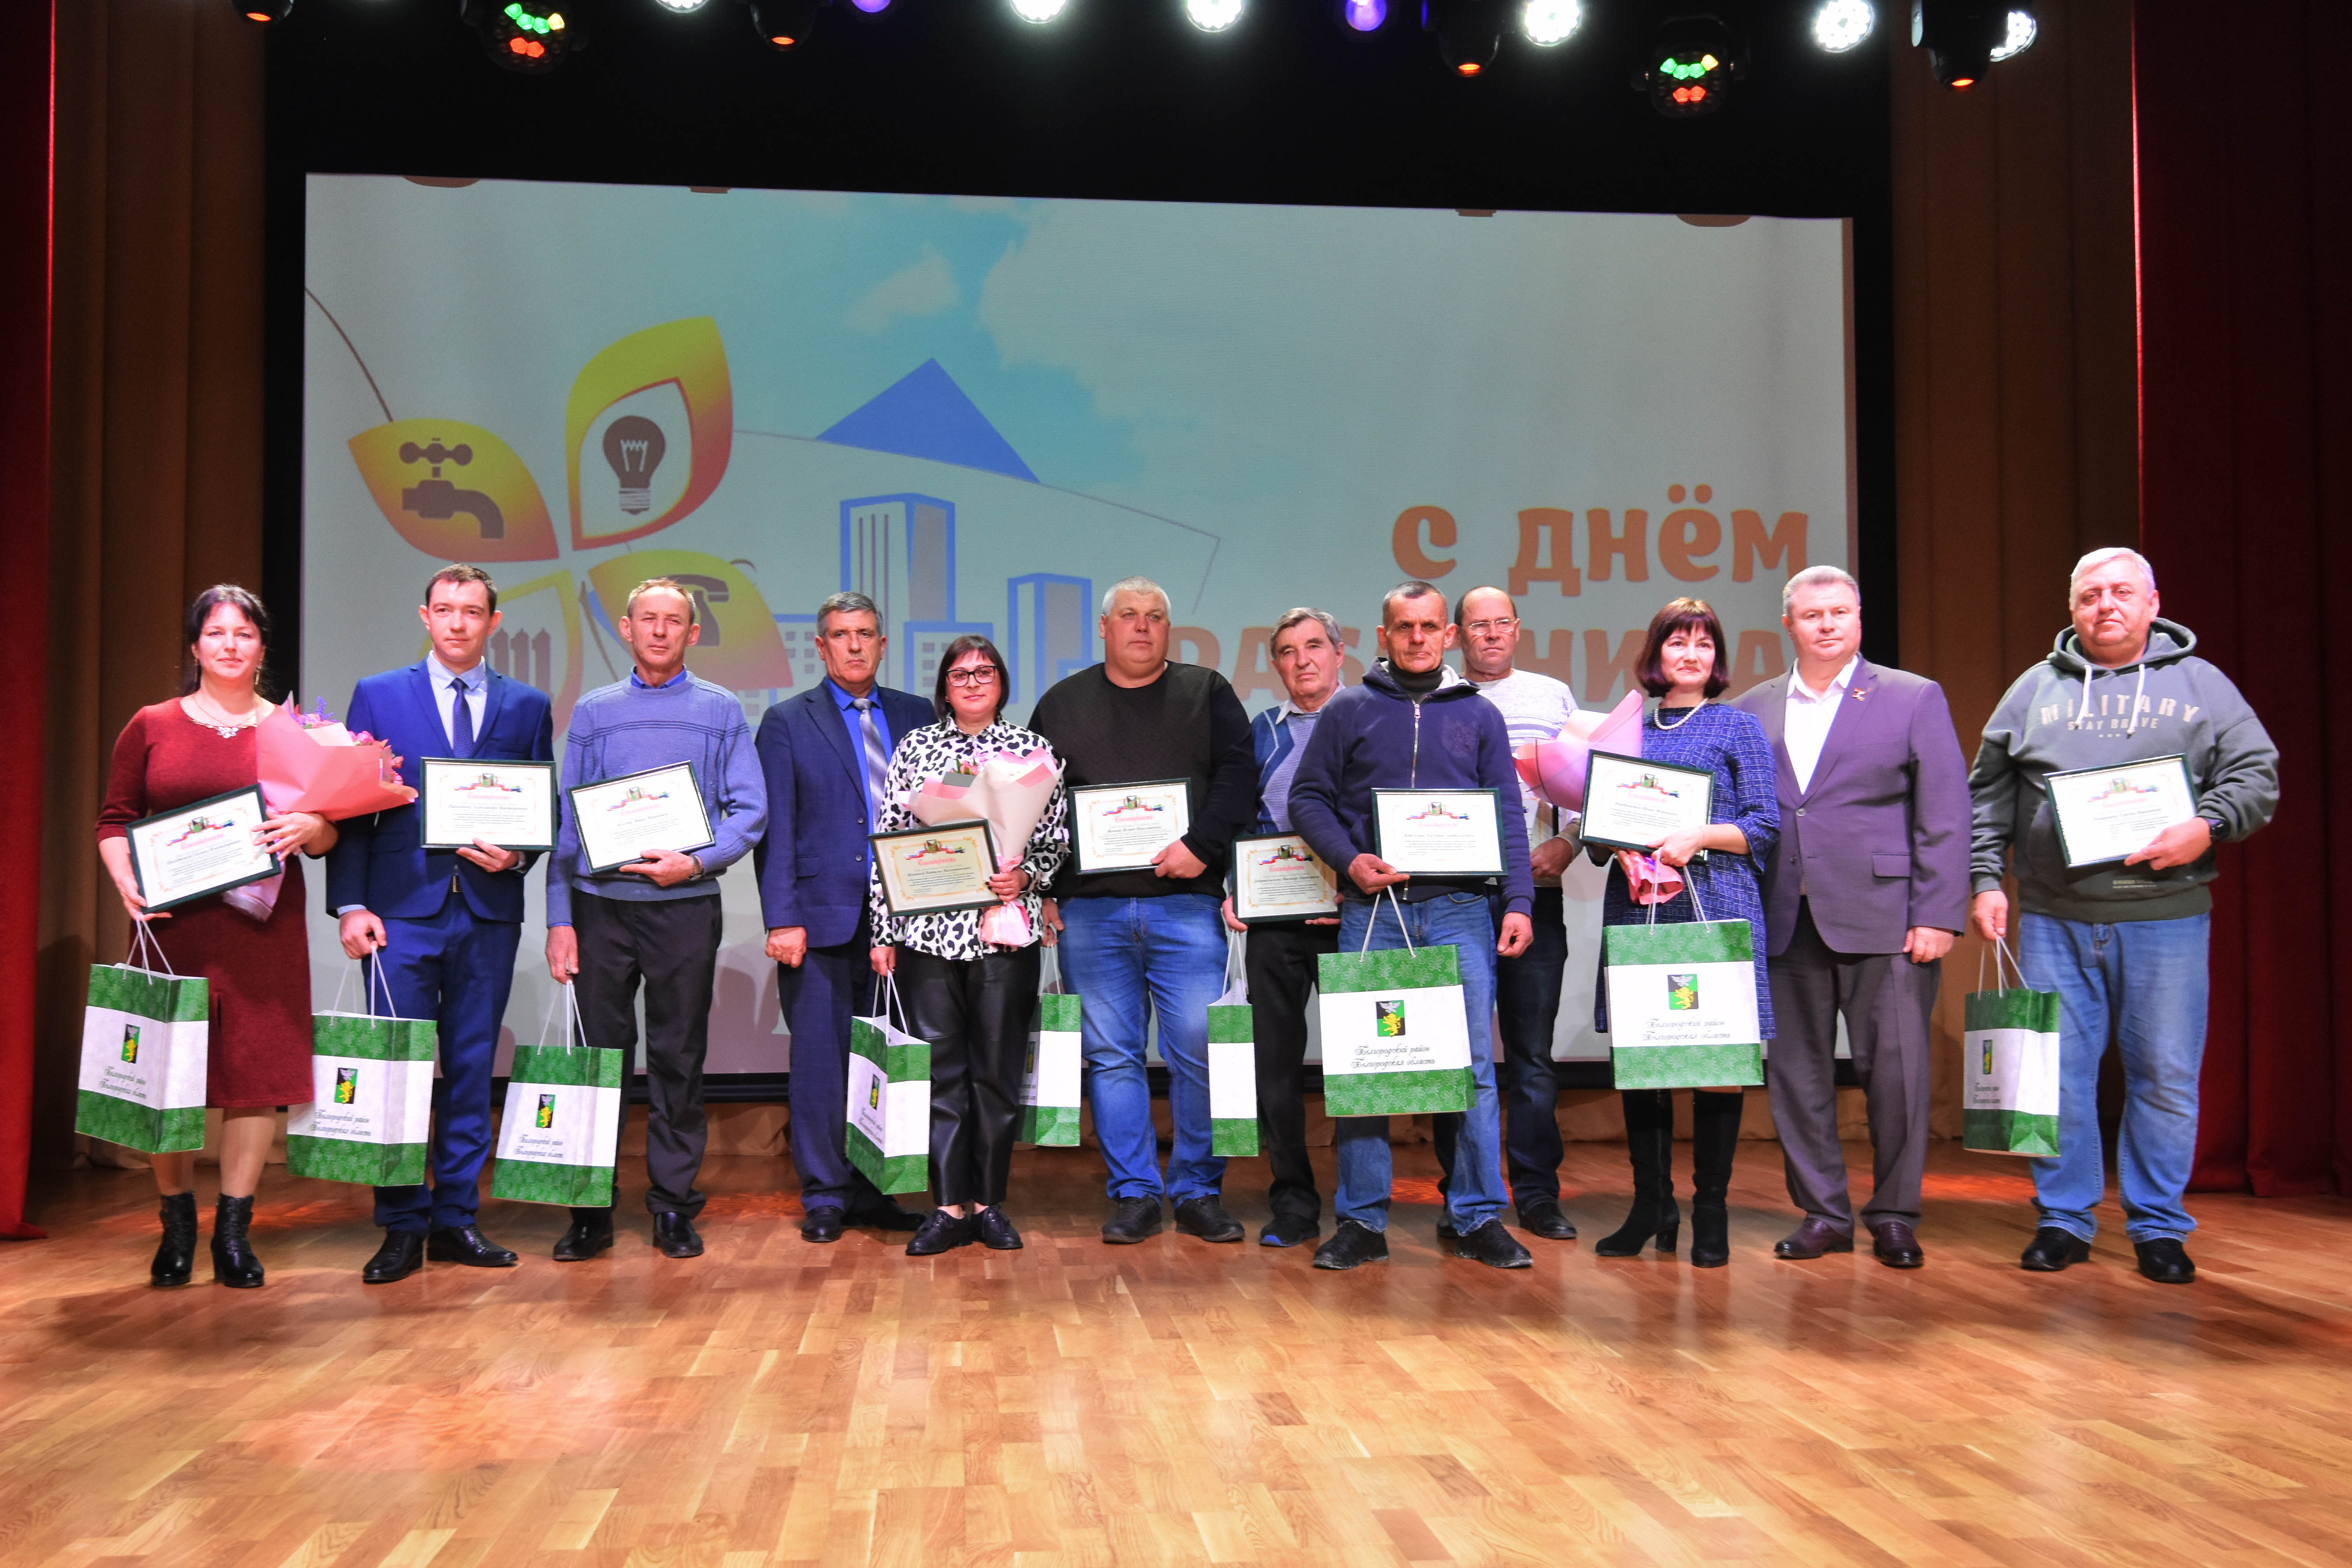 Белгородские власти наградили лучших сотрудников «Жилищного управления ЖБК-1» и «Экомир ЖБК-1» в преддверии профессионального праздника